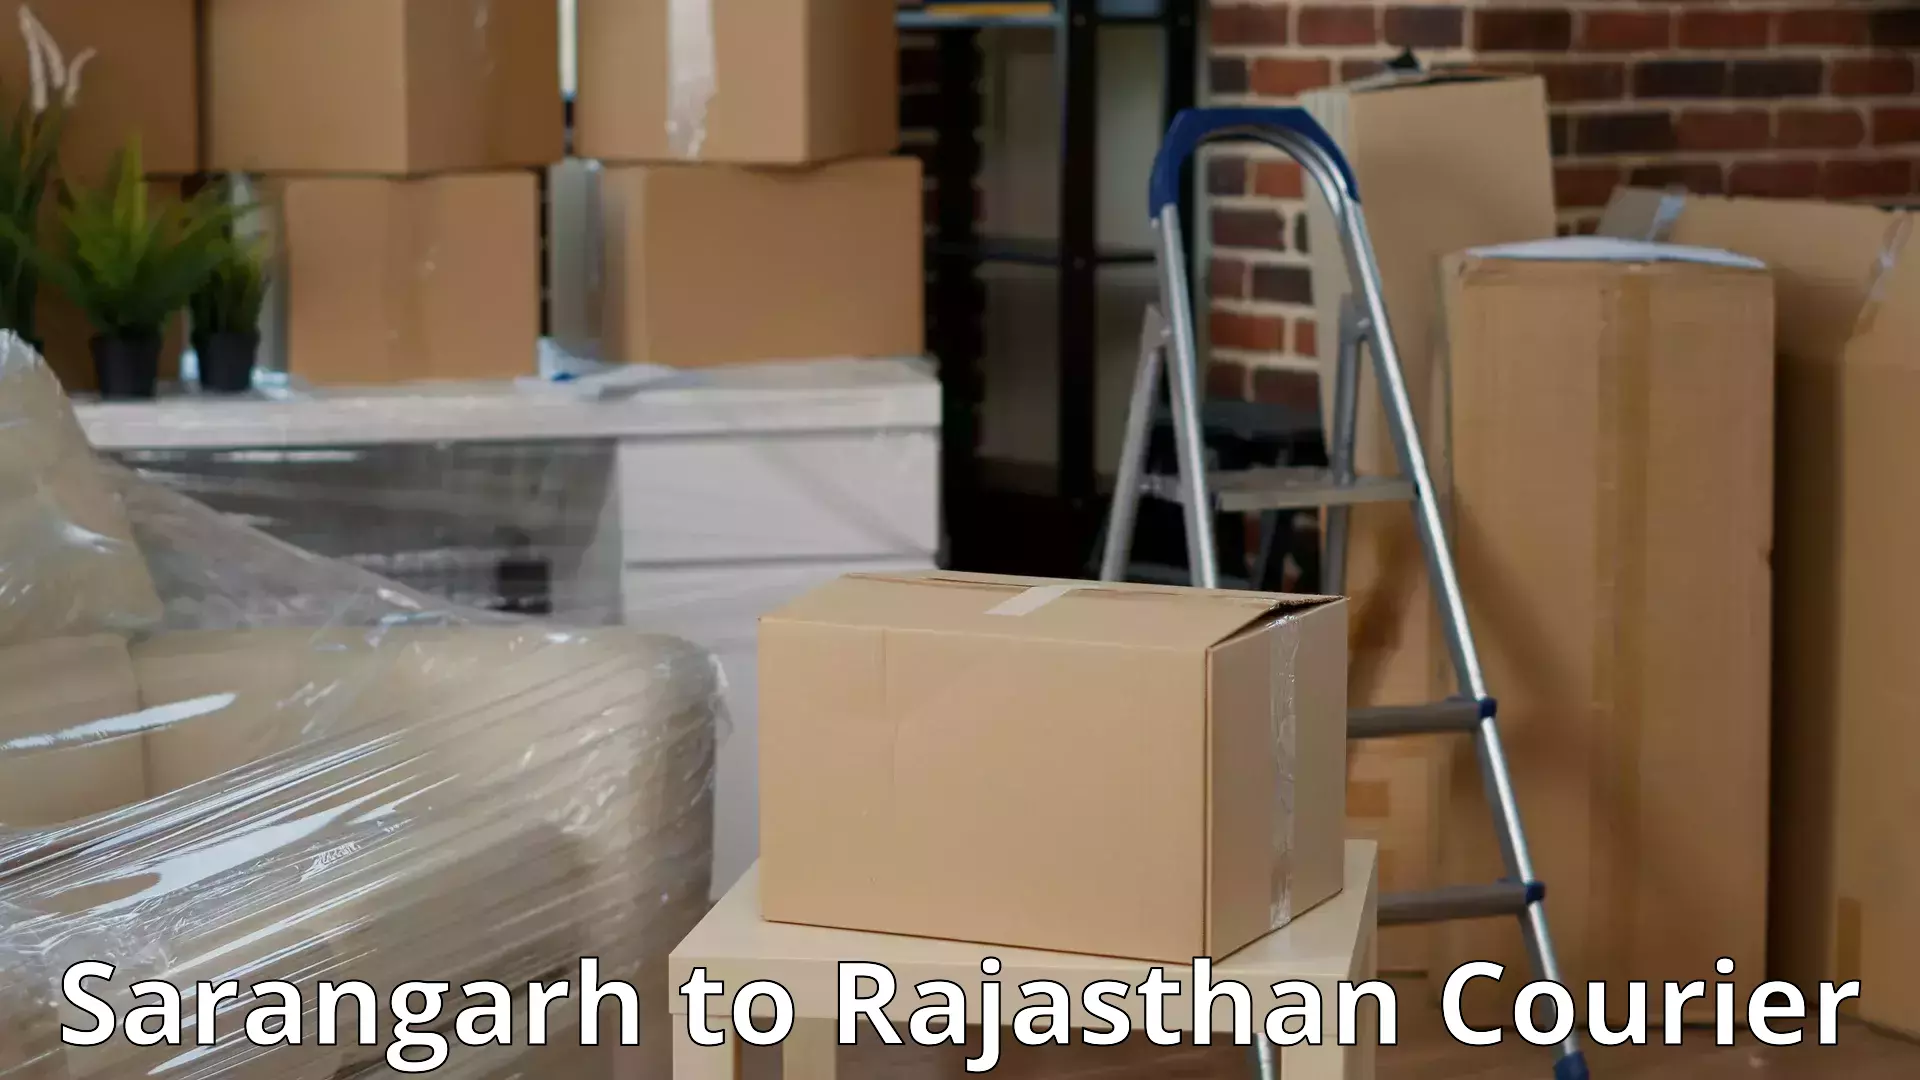 Door-to-door relocation services Sarangarh to Rajasthan